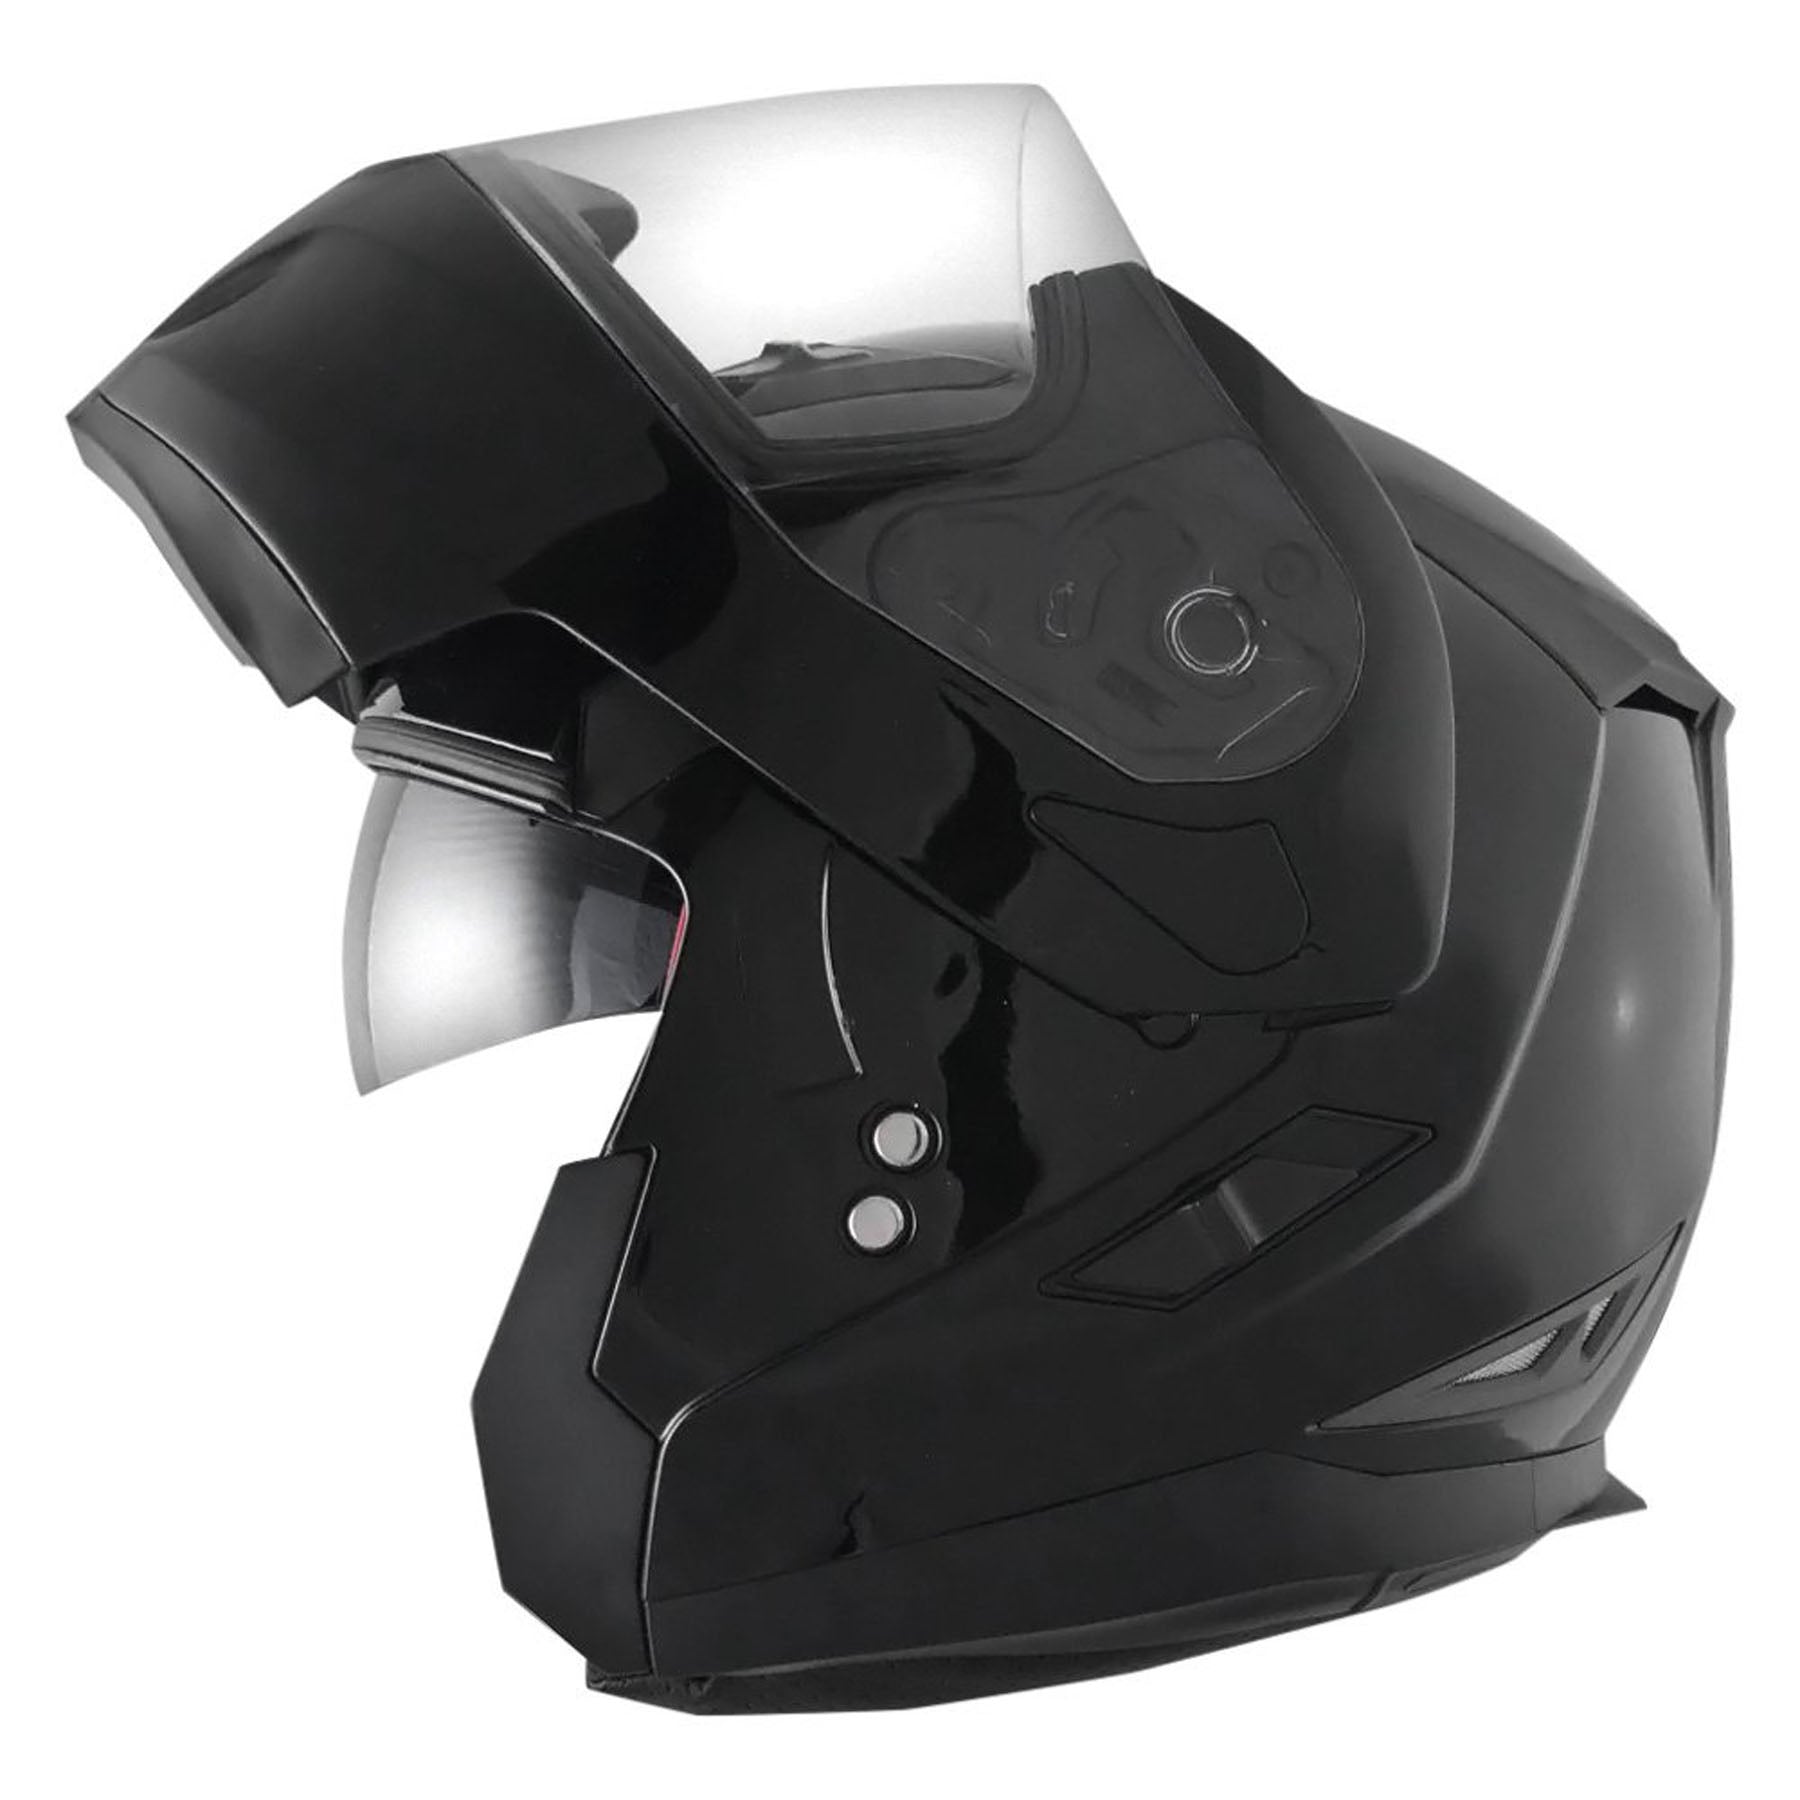 Zoan 037-018-1 Zoan Flux 4.1 M/c Helmet, Black - Xxl Size : 2X, Color : Glossy Black, guard : Snap